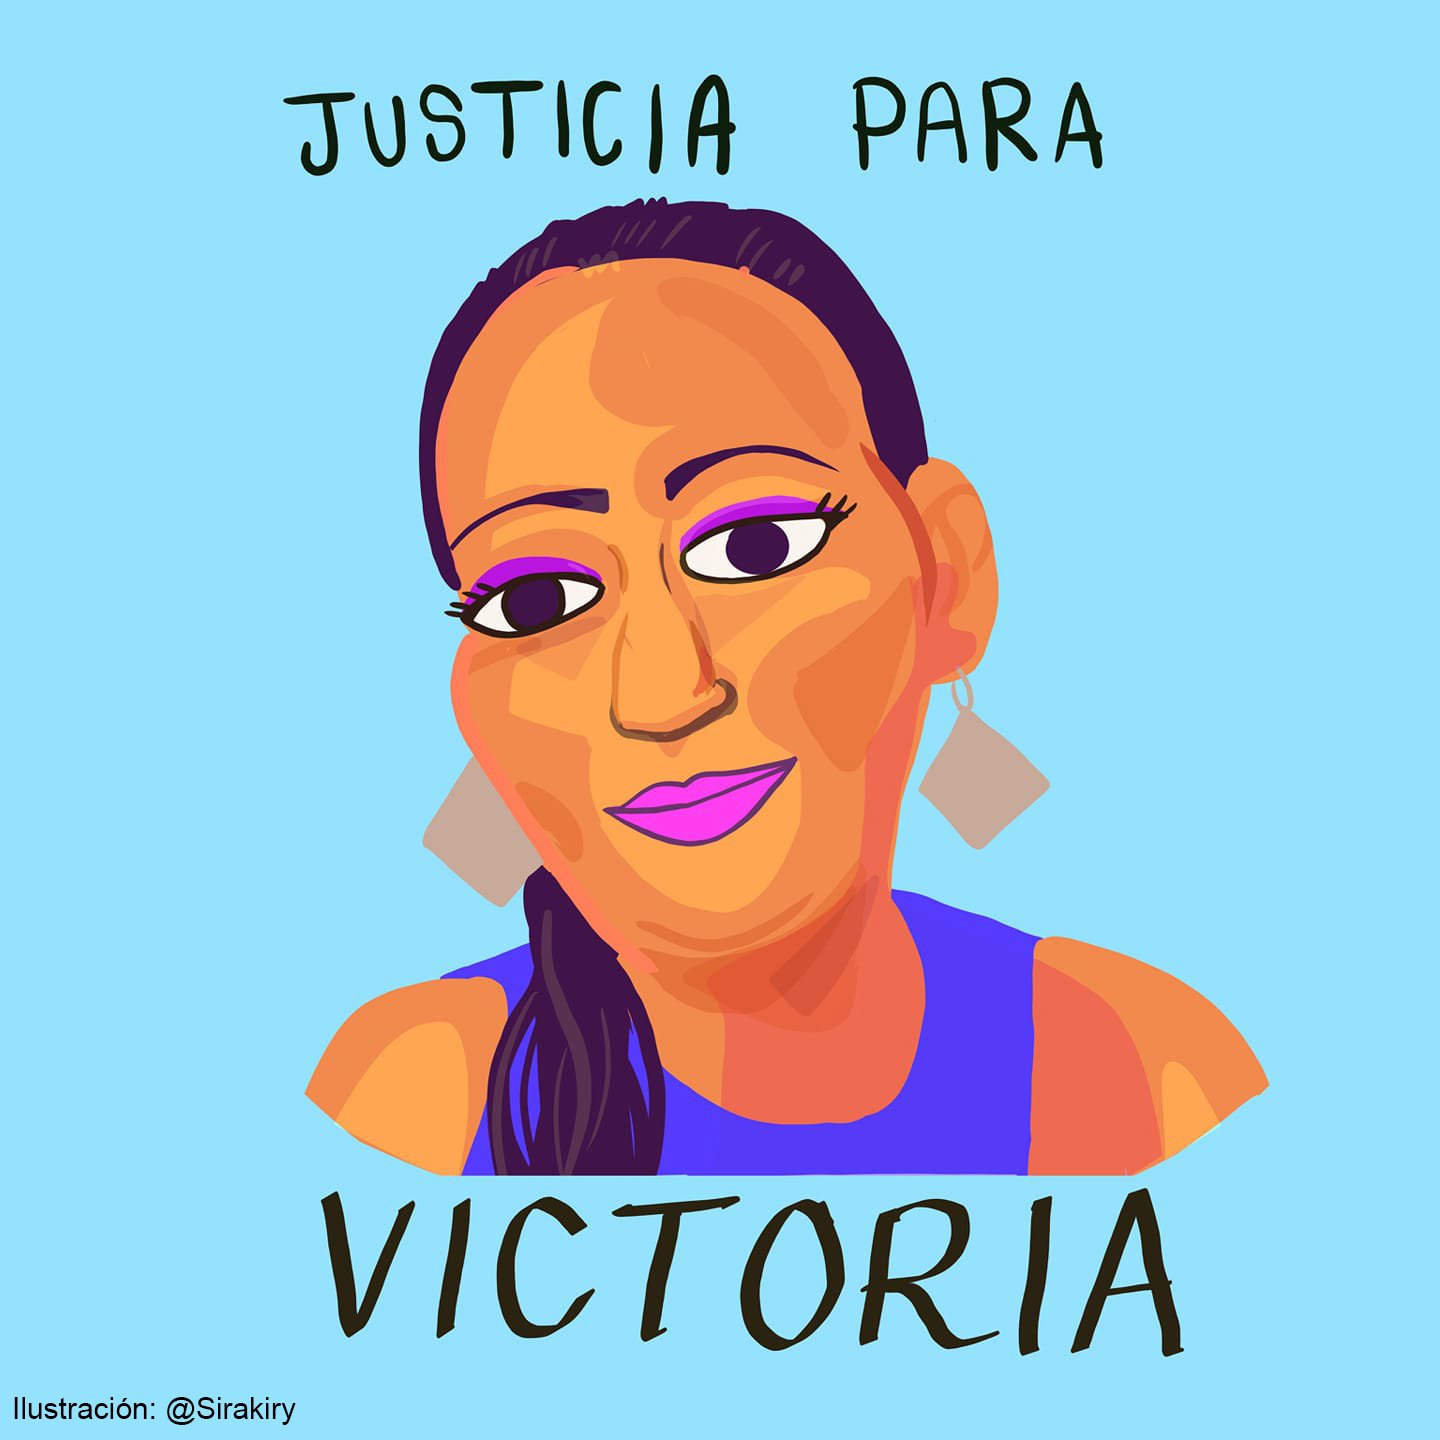 Victoria Esperanza salió de El Salvador con sus dos hijas en 2016 (Foto: Twitter/@ONUDHmexico/Ilustración/@sirakiry)